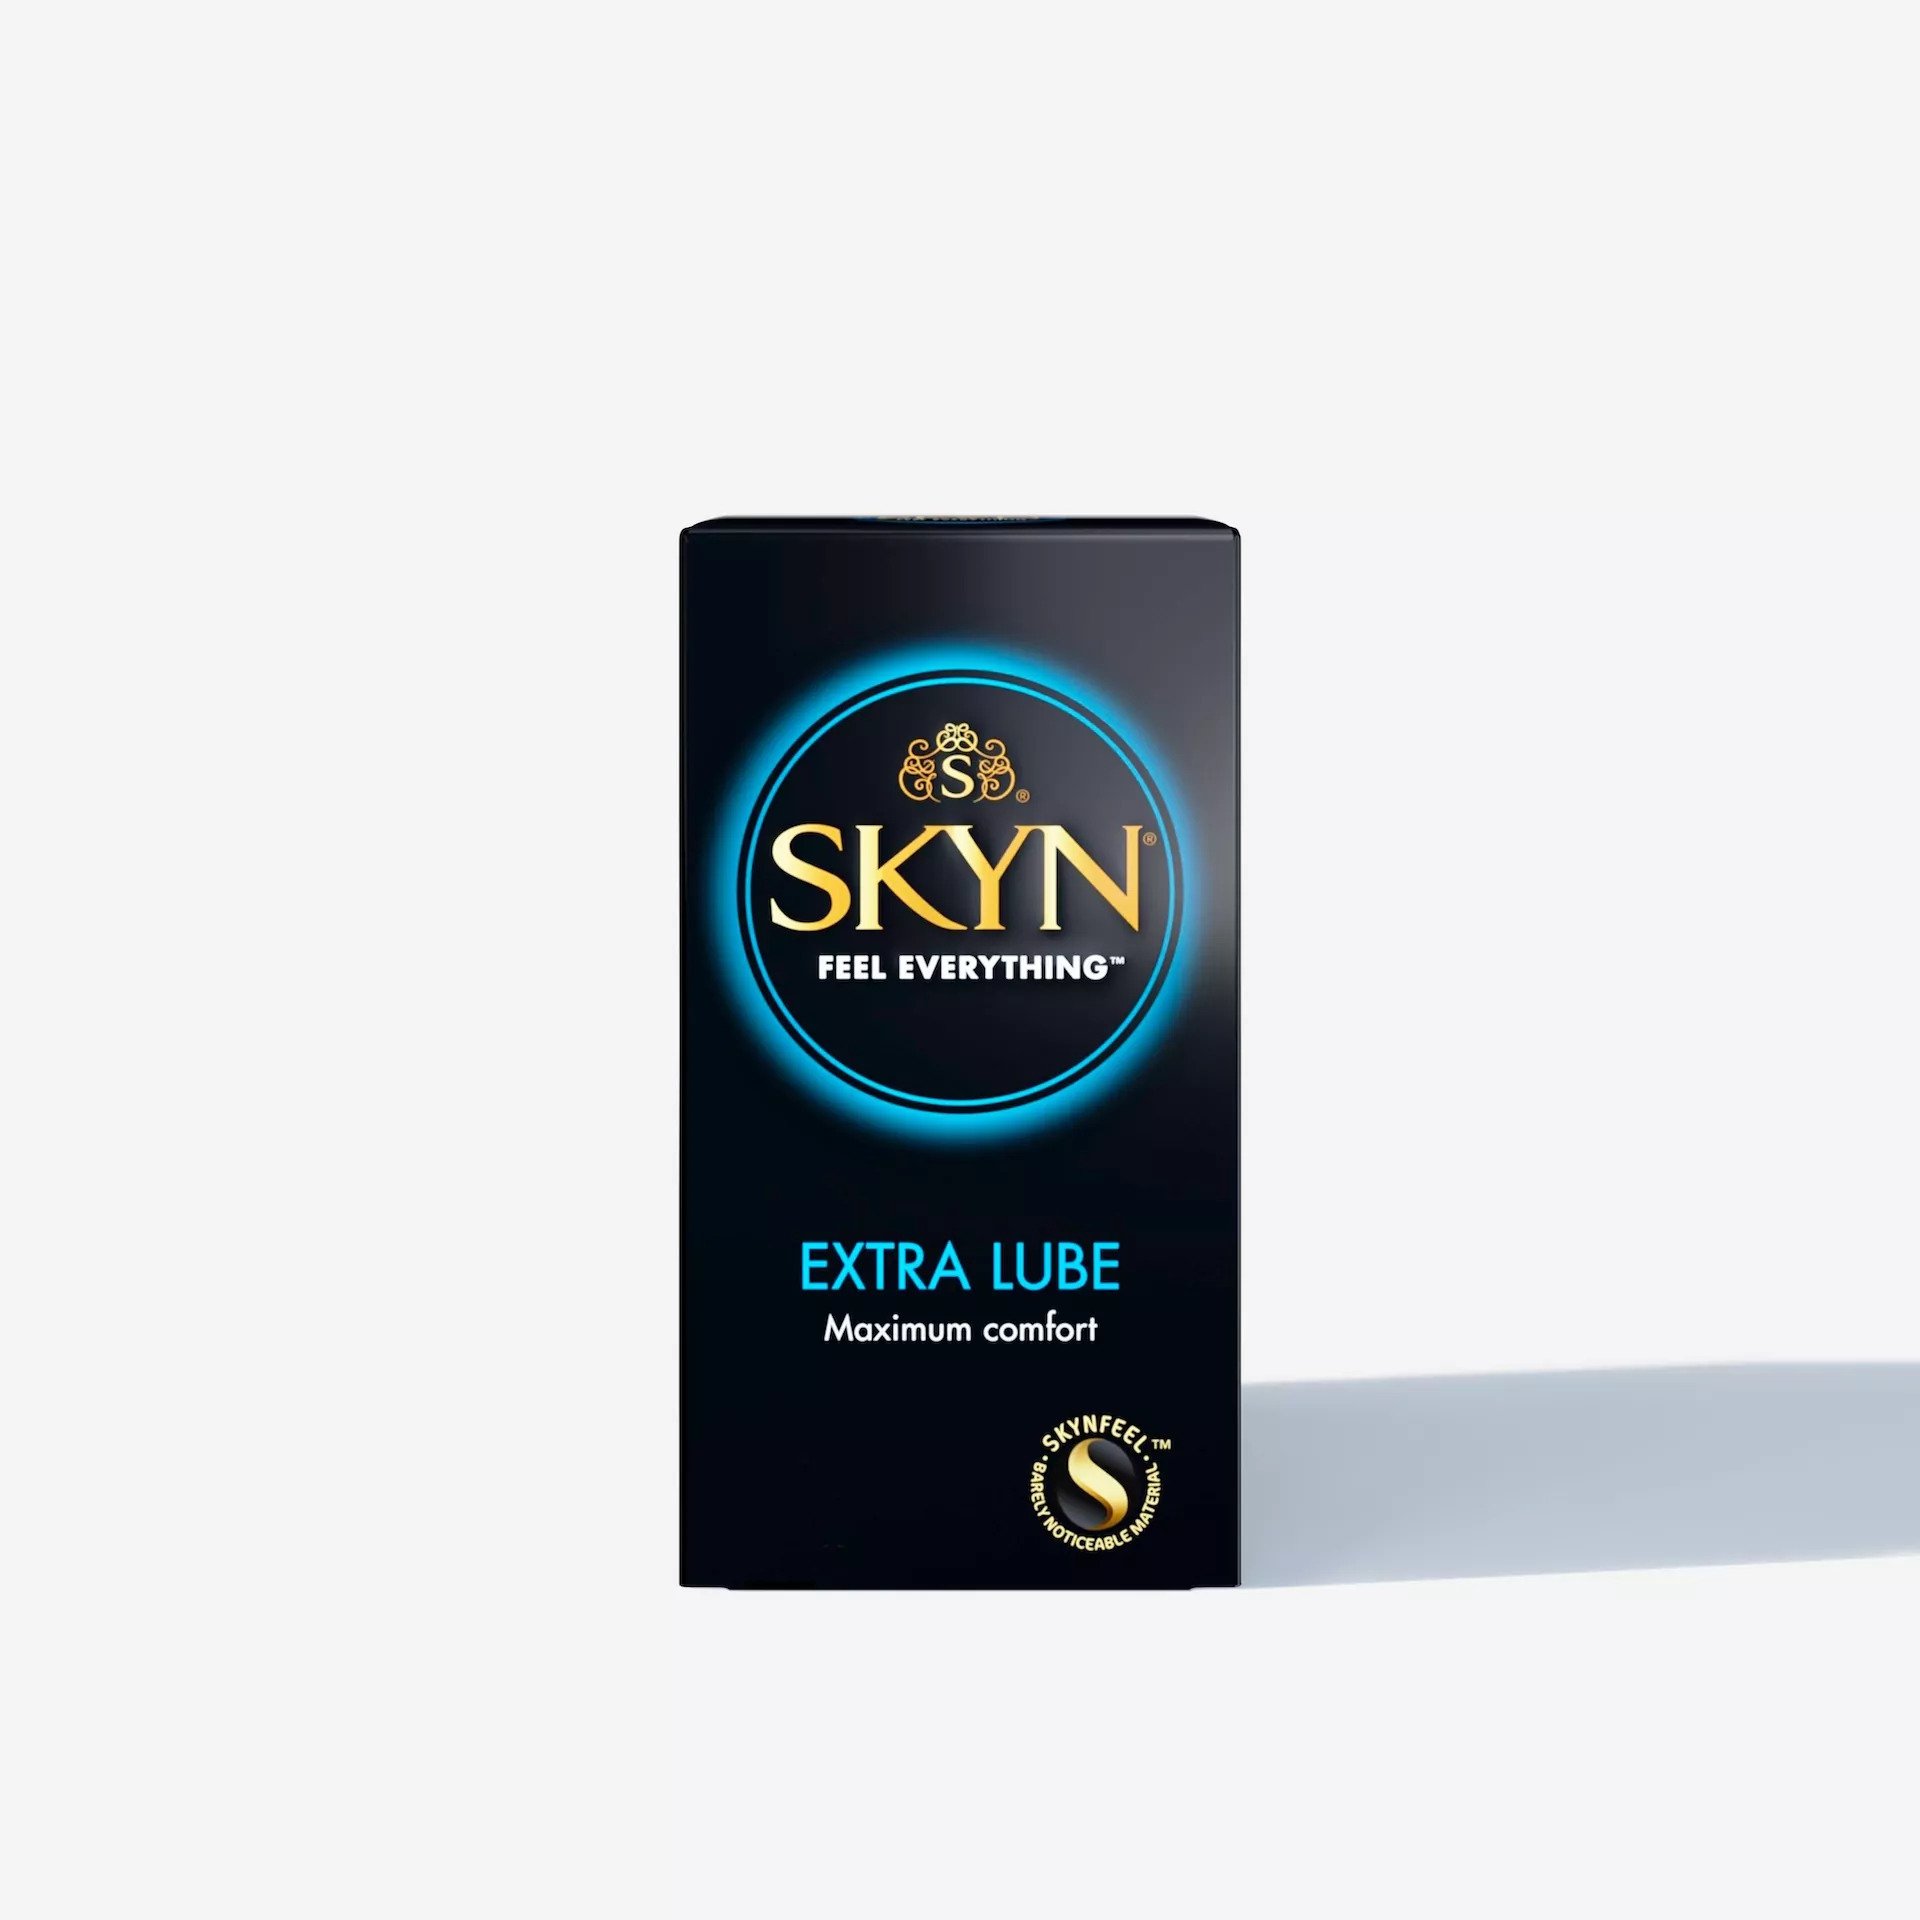 SKYN® Selection Condoms 30 + Free 6 Pack of SKYN® Elite Condoms